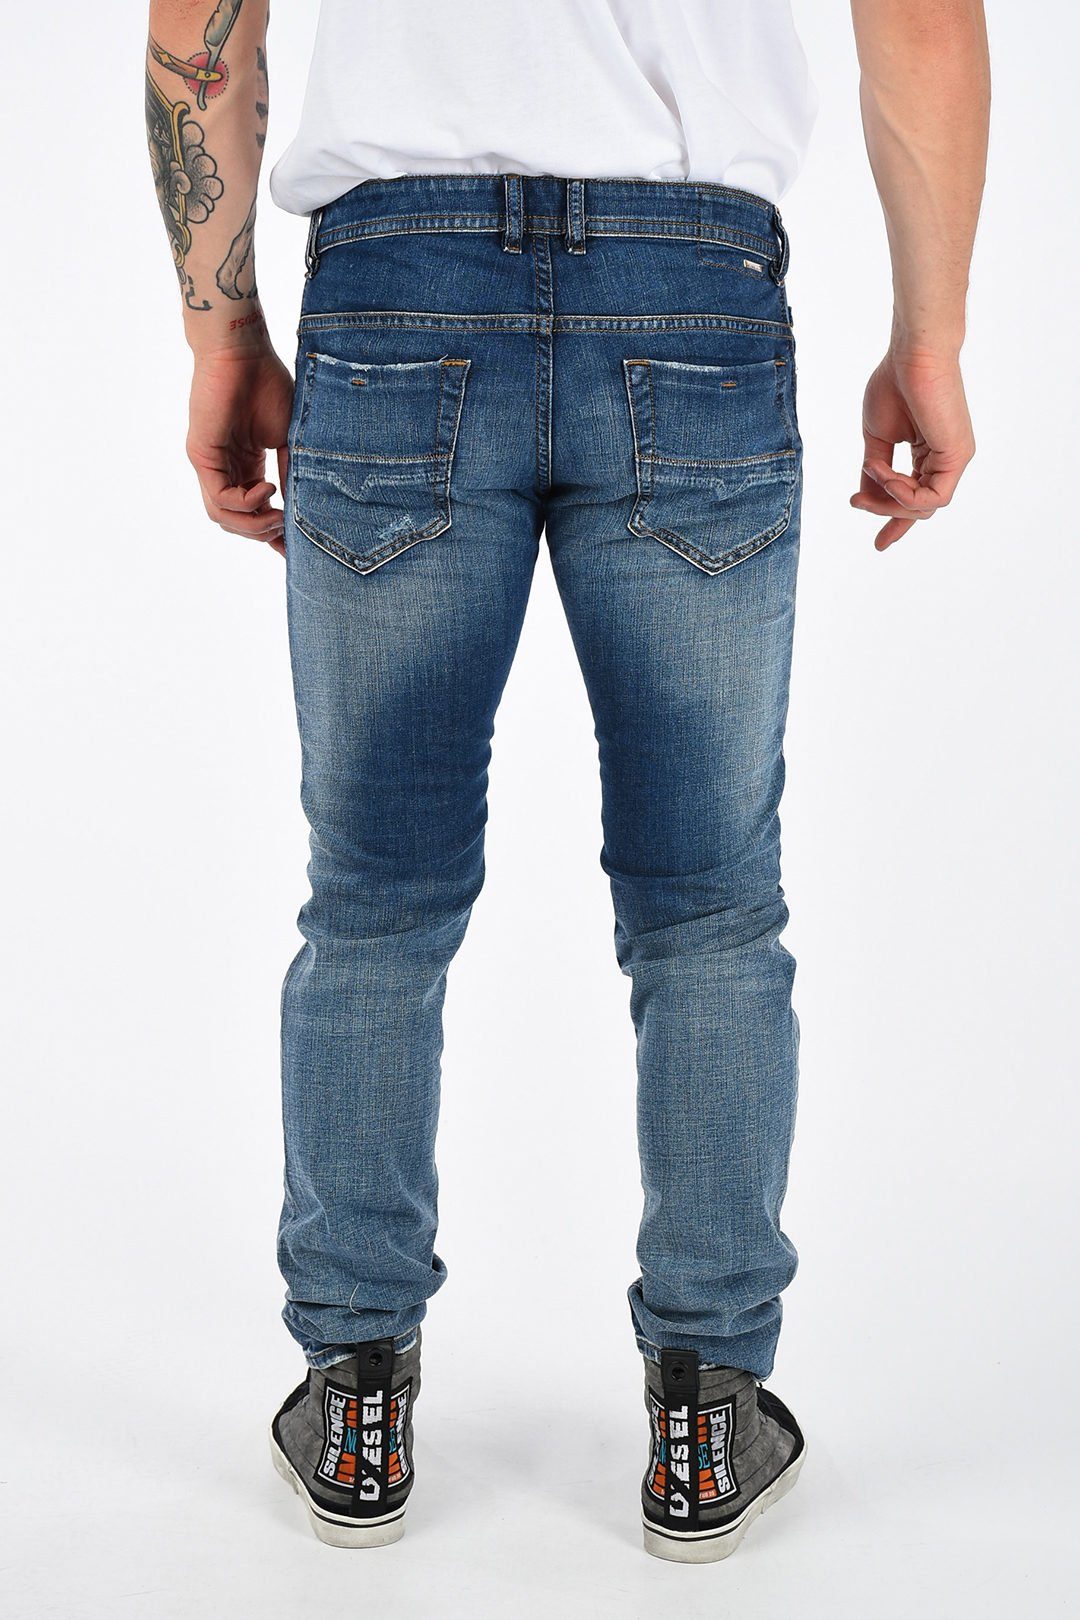 Diesel Slim-fit-Jeans Röhrenjeans, Used-Look, Länge: Stretch, Thommer 5-Pocket-Style, 084TW Herren L32 Blau, Vintage